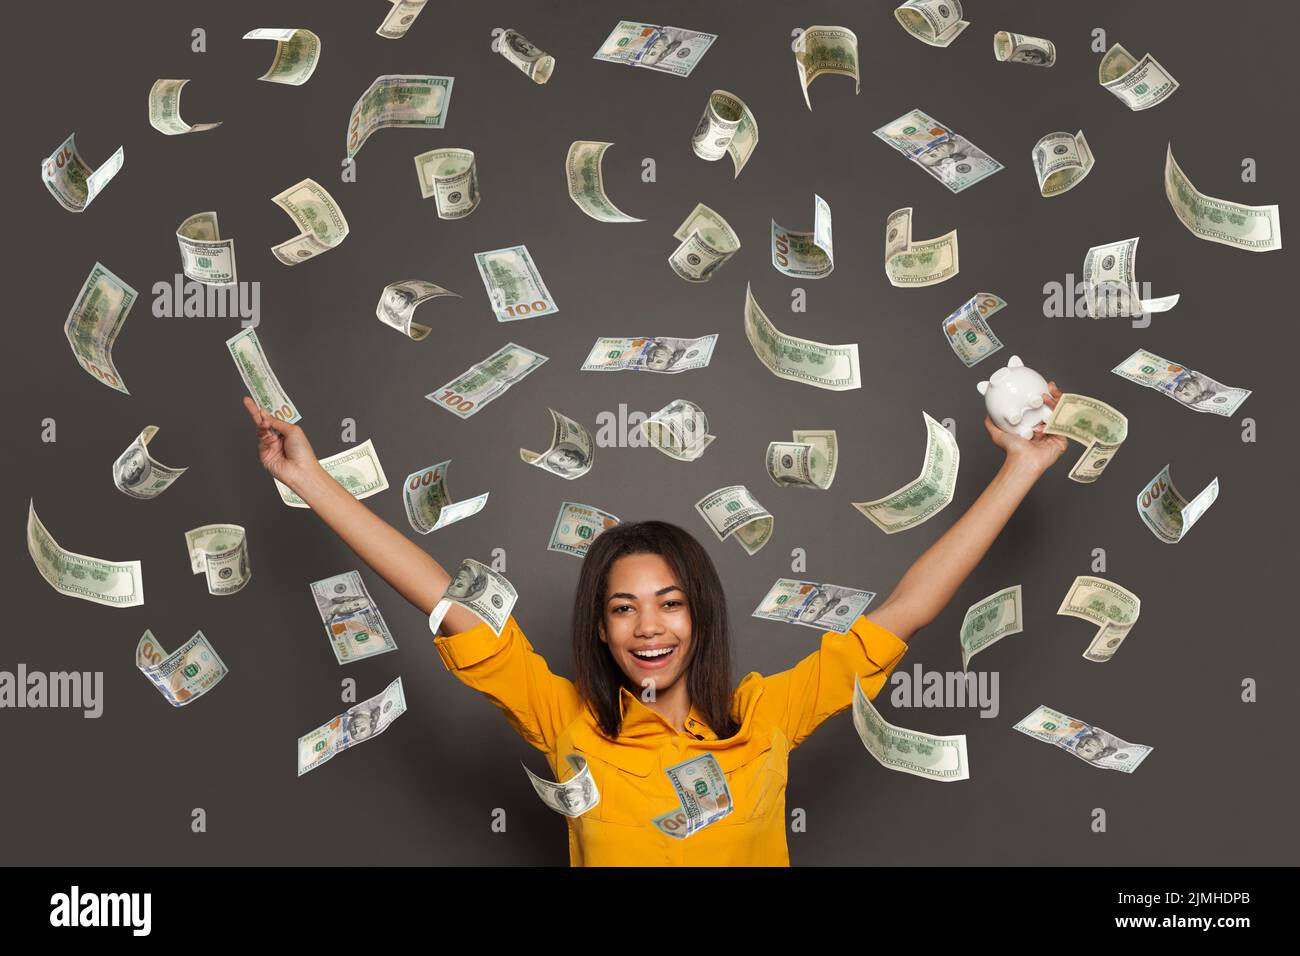 Retrato de una joven feliz echando billetes de banco aislados sobre fondo blanco Foto de stock